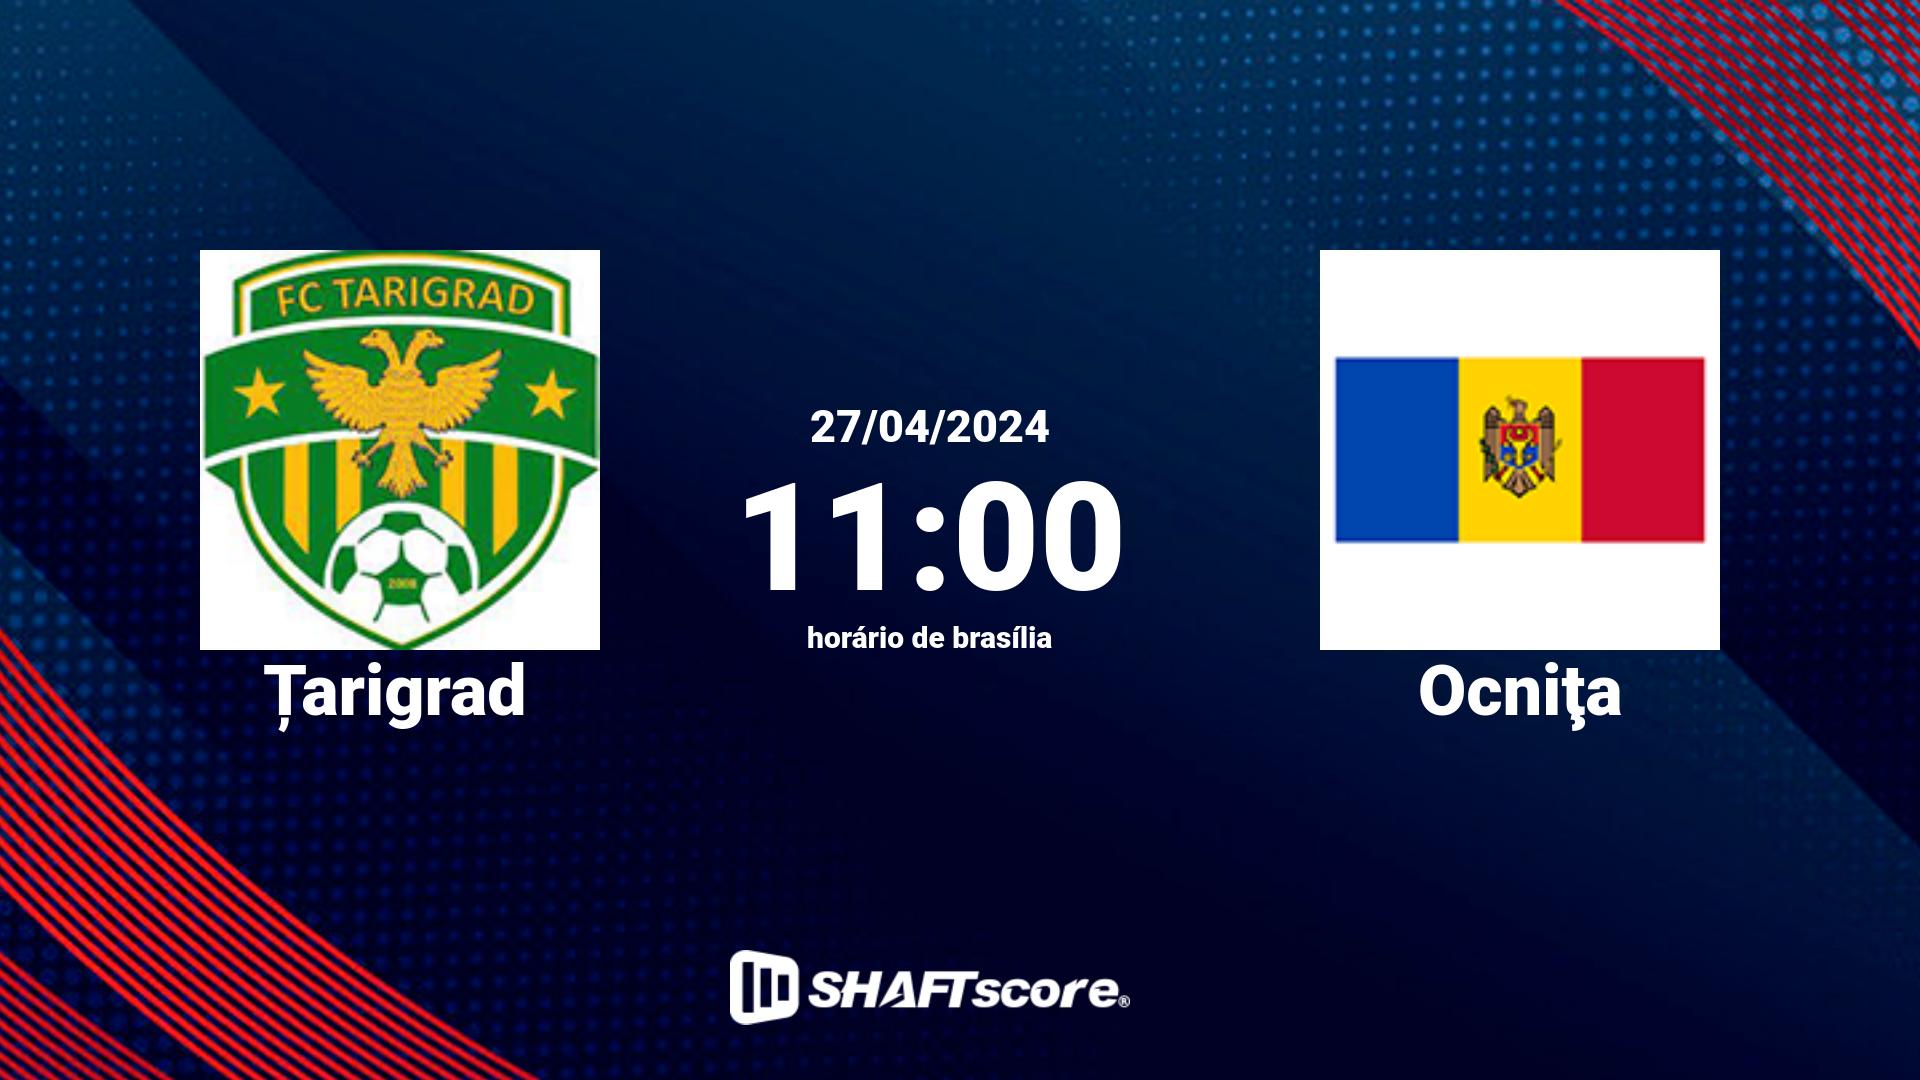 Estatísticas do jogo Țarigrad vs Ocniţa 27.04 11:00